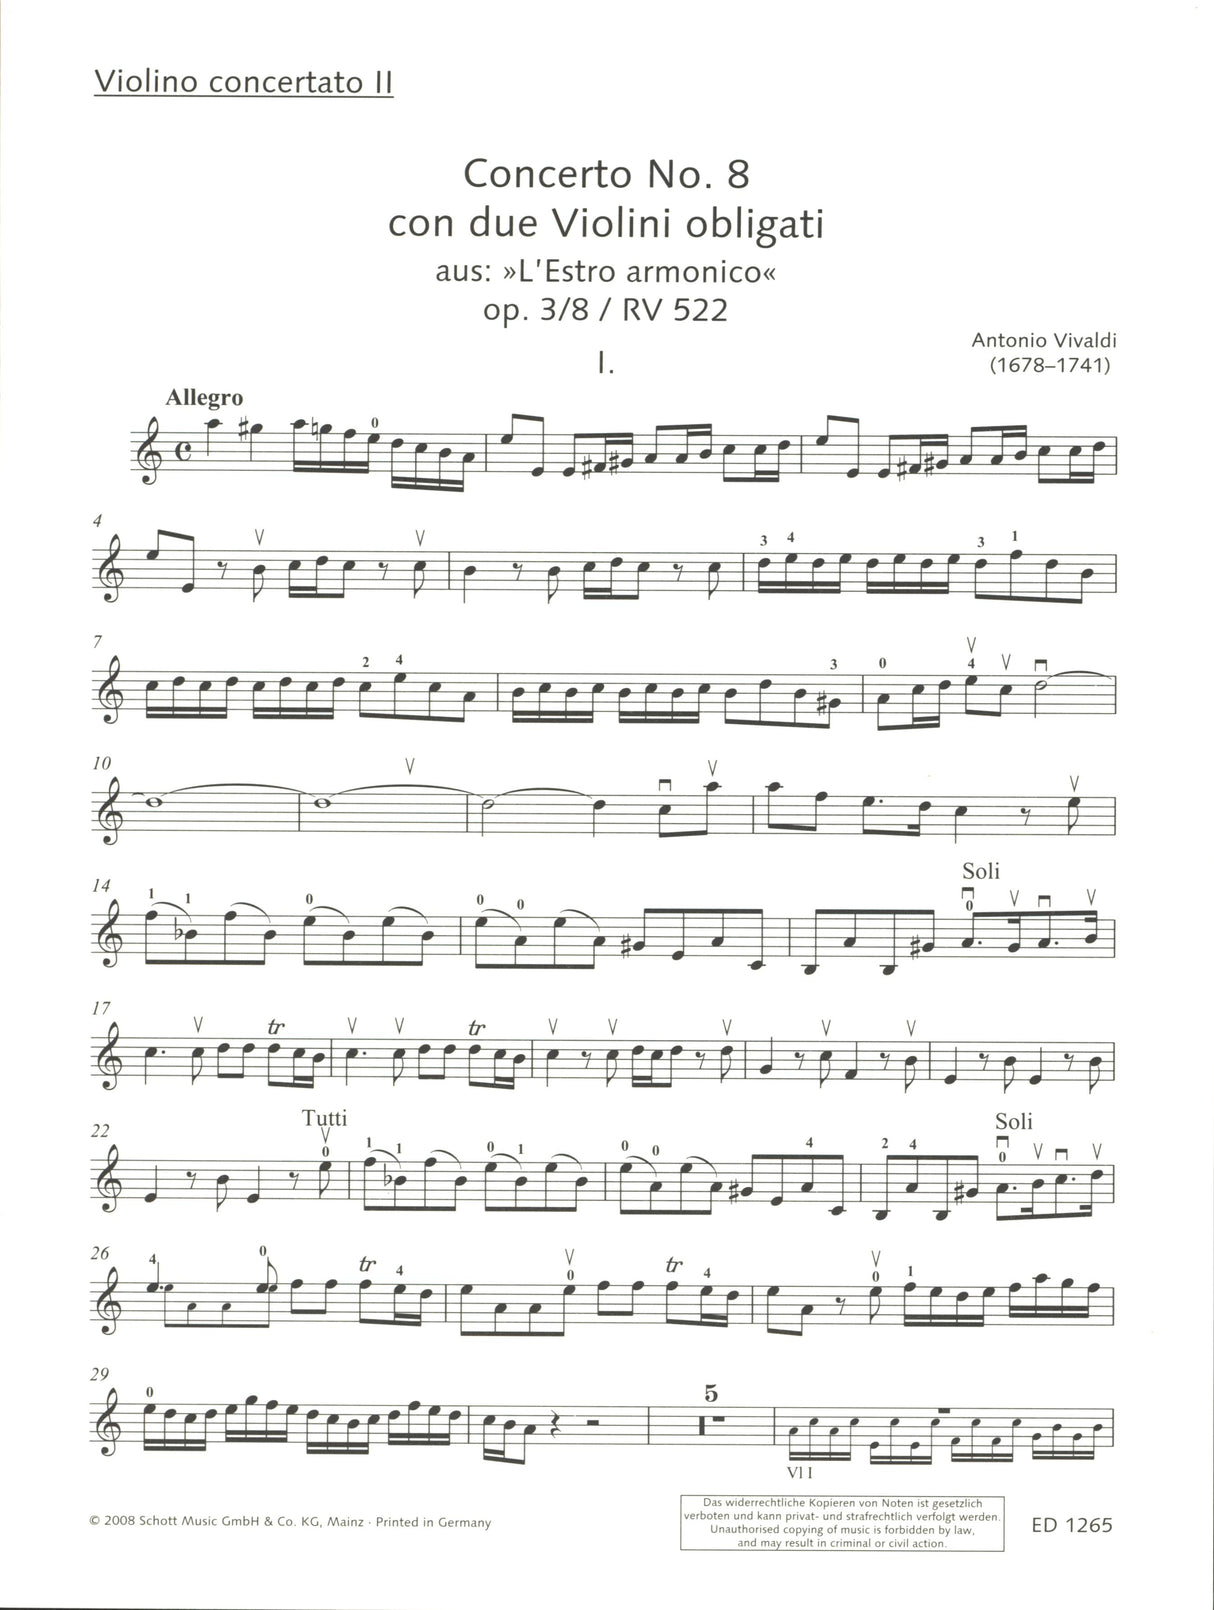 Vivaldi: Concerto for 2 Violins in A Minor, RV 522, Op. 3, No. 8